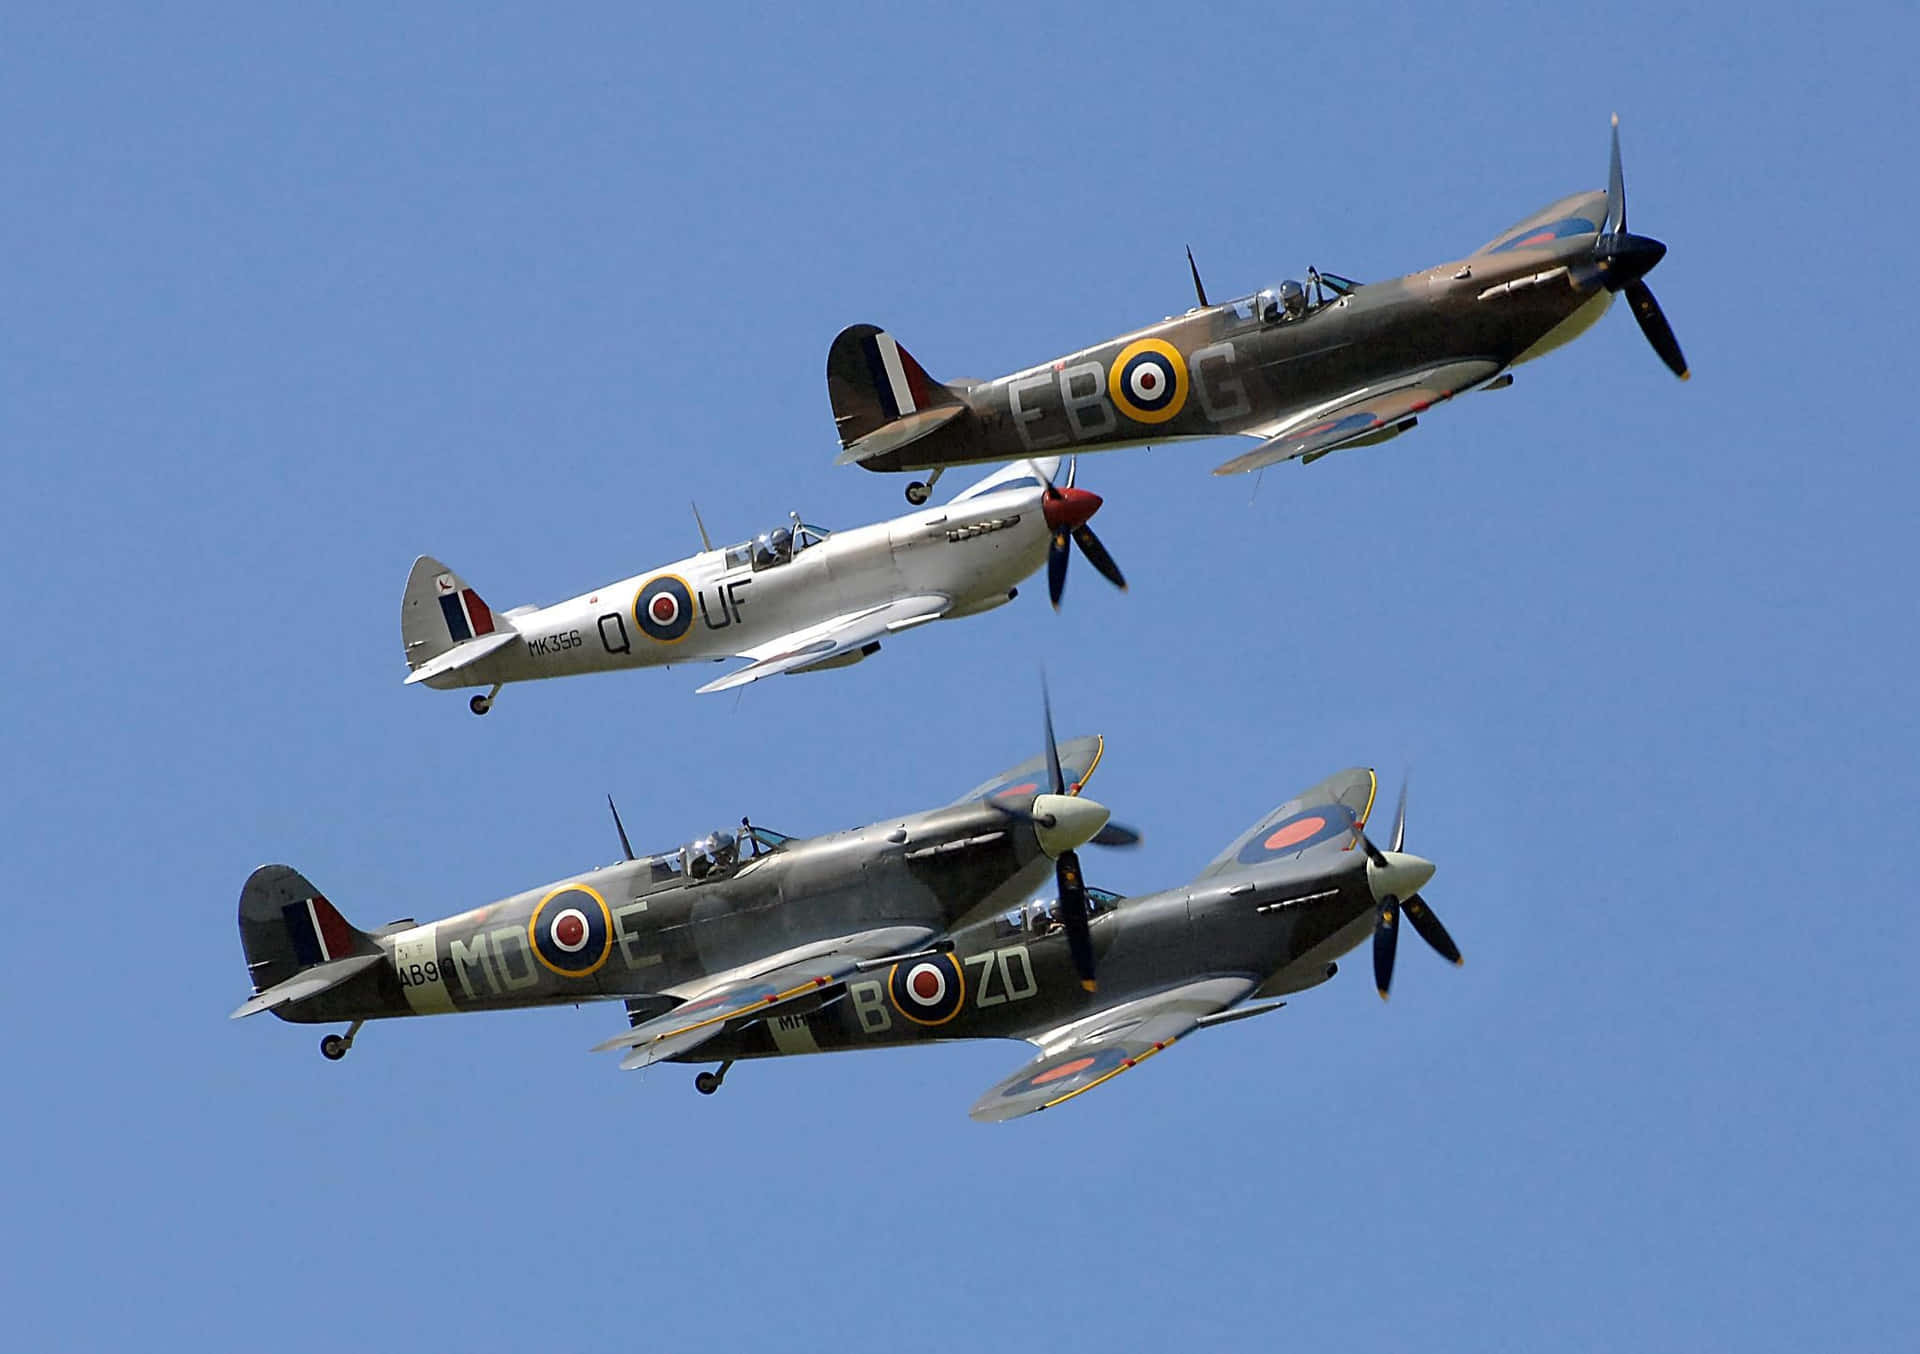 Et ikonisk Spitfire-fly flyvende over England. Wallpaper